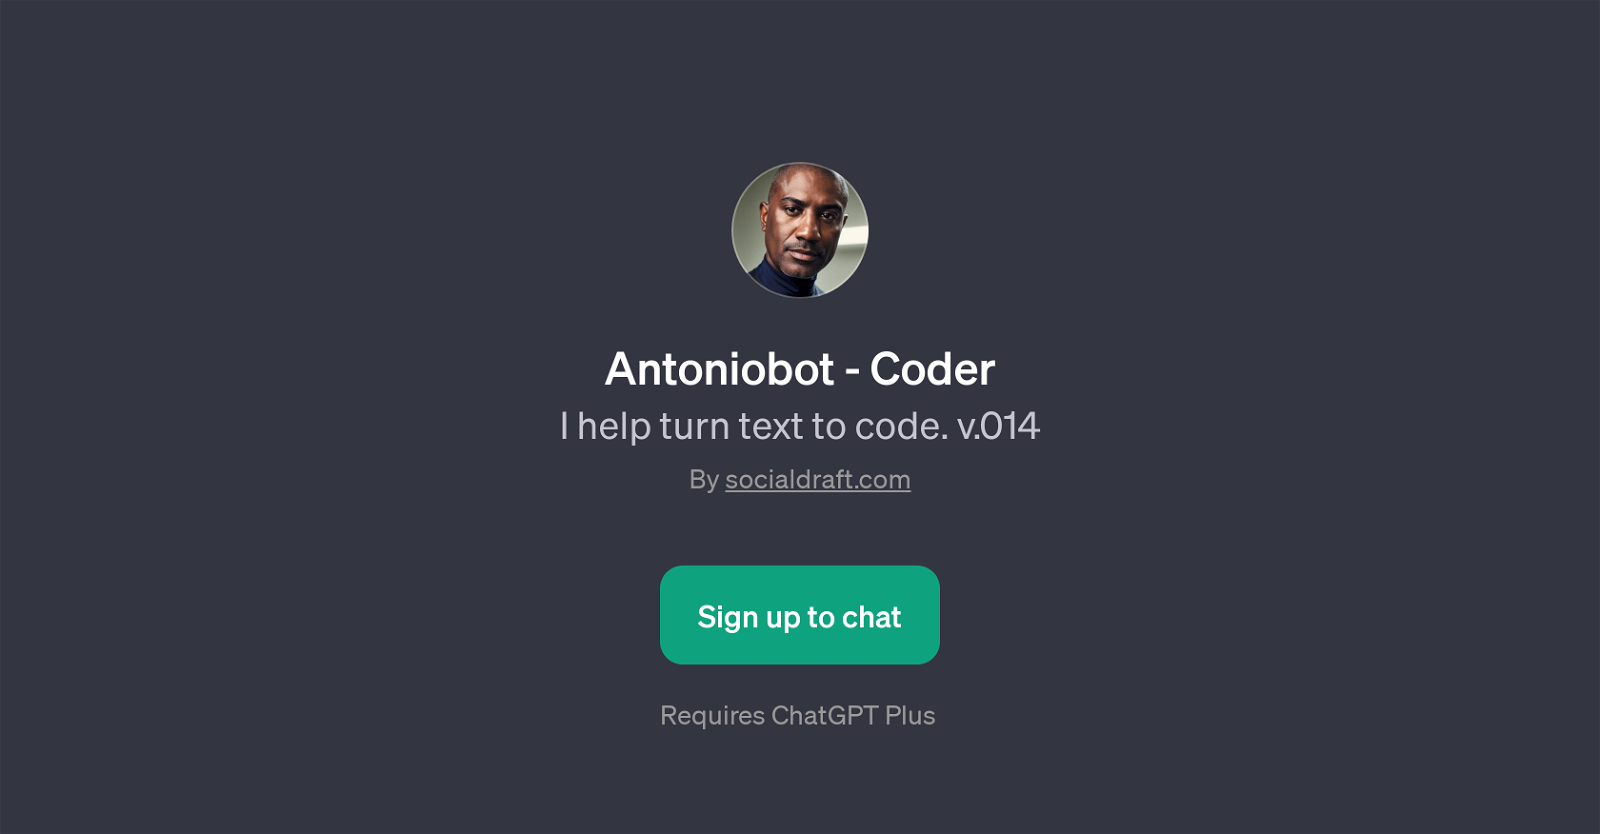 Antoniobot - Coder website